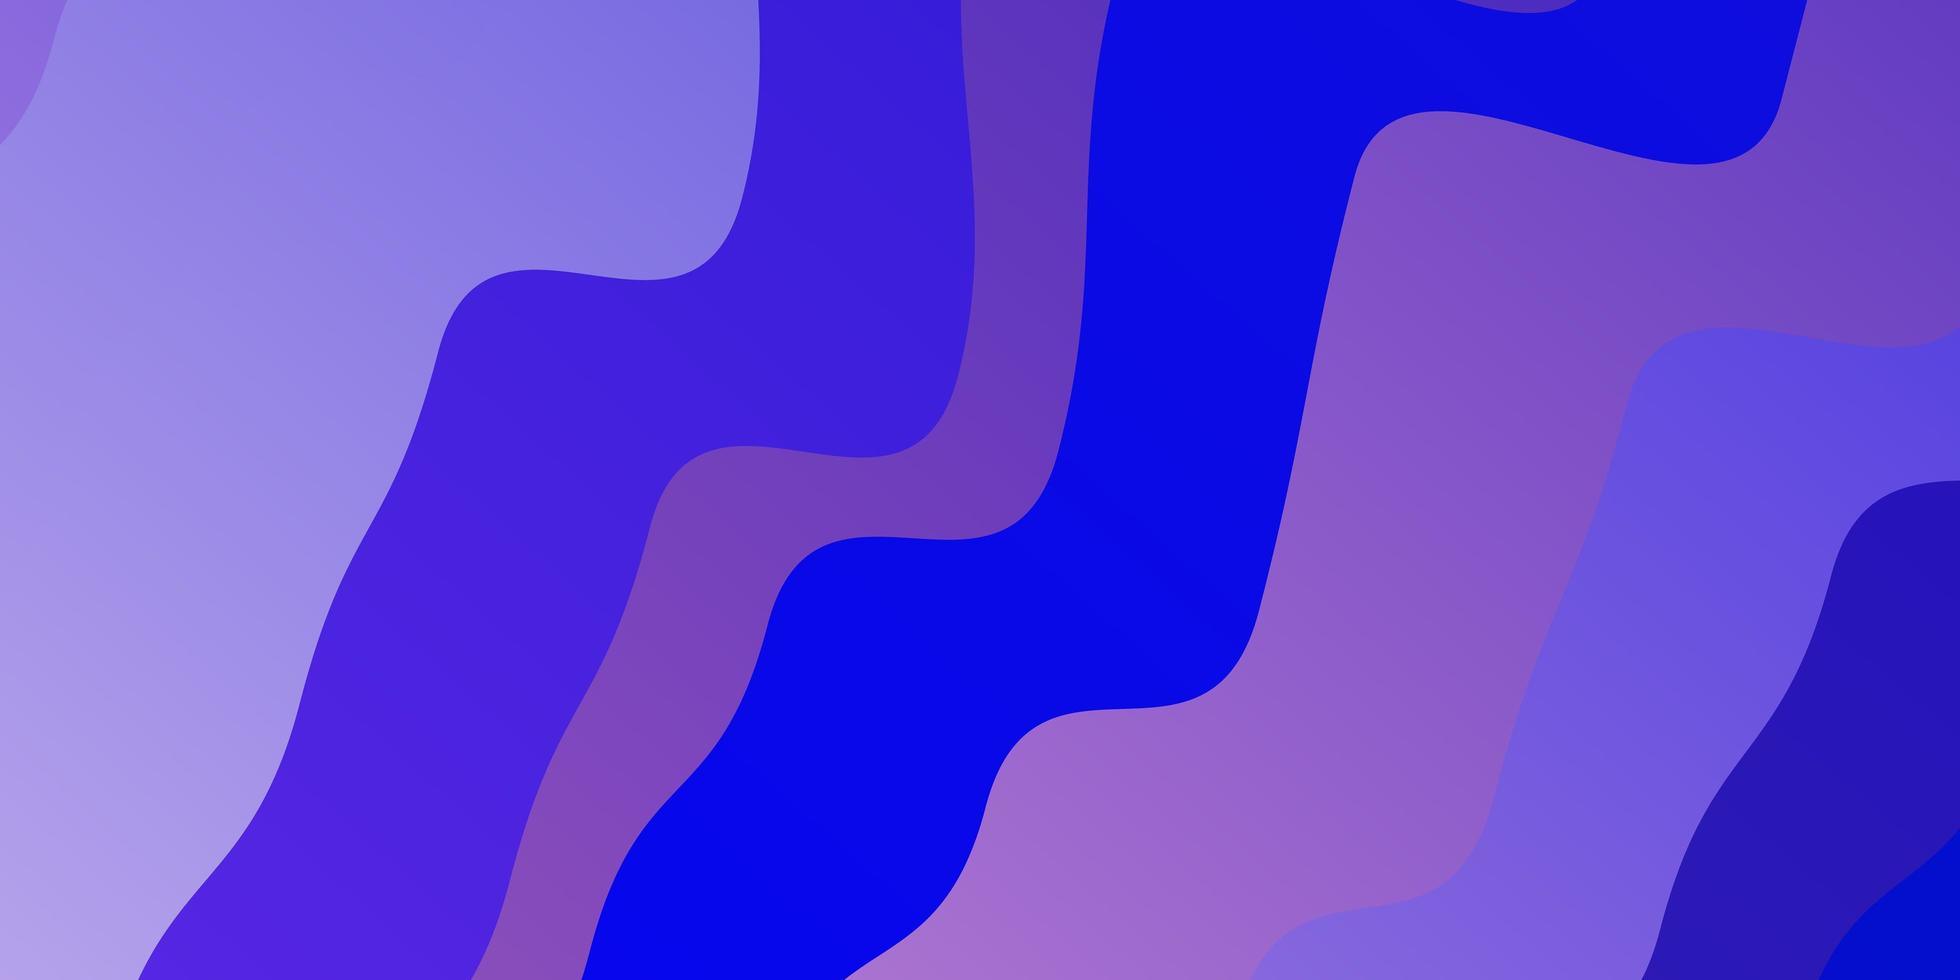 ljusrosa, blå vektorbakgrund med böjda linjer. vektor